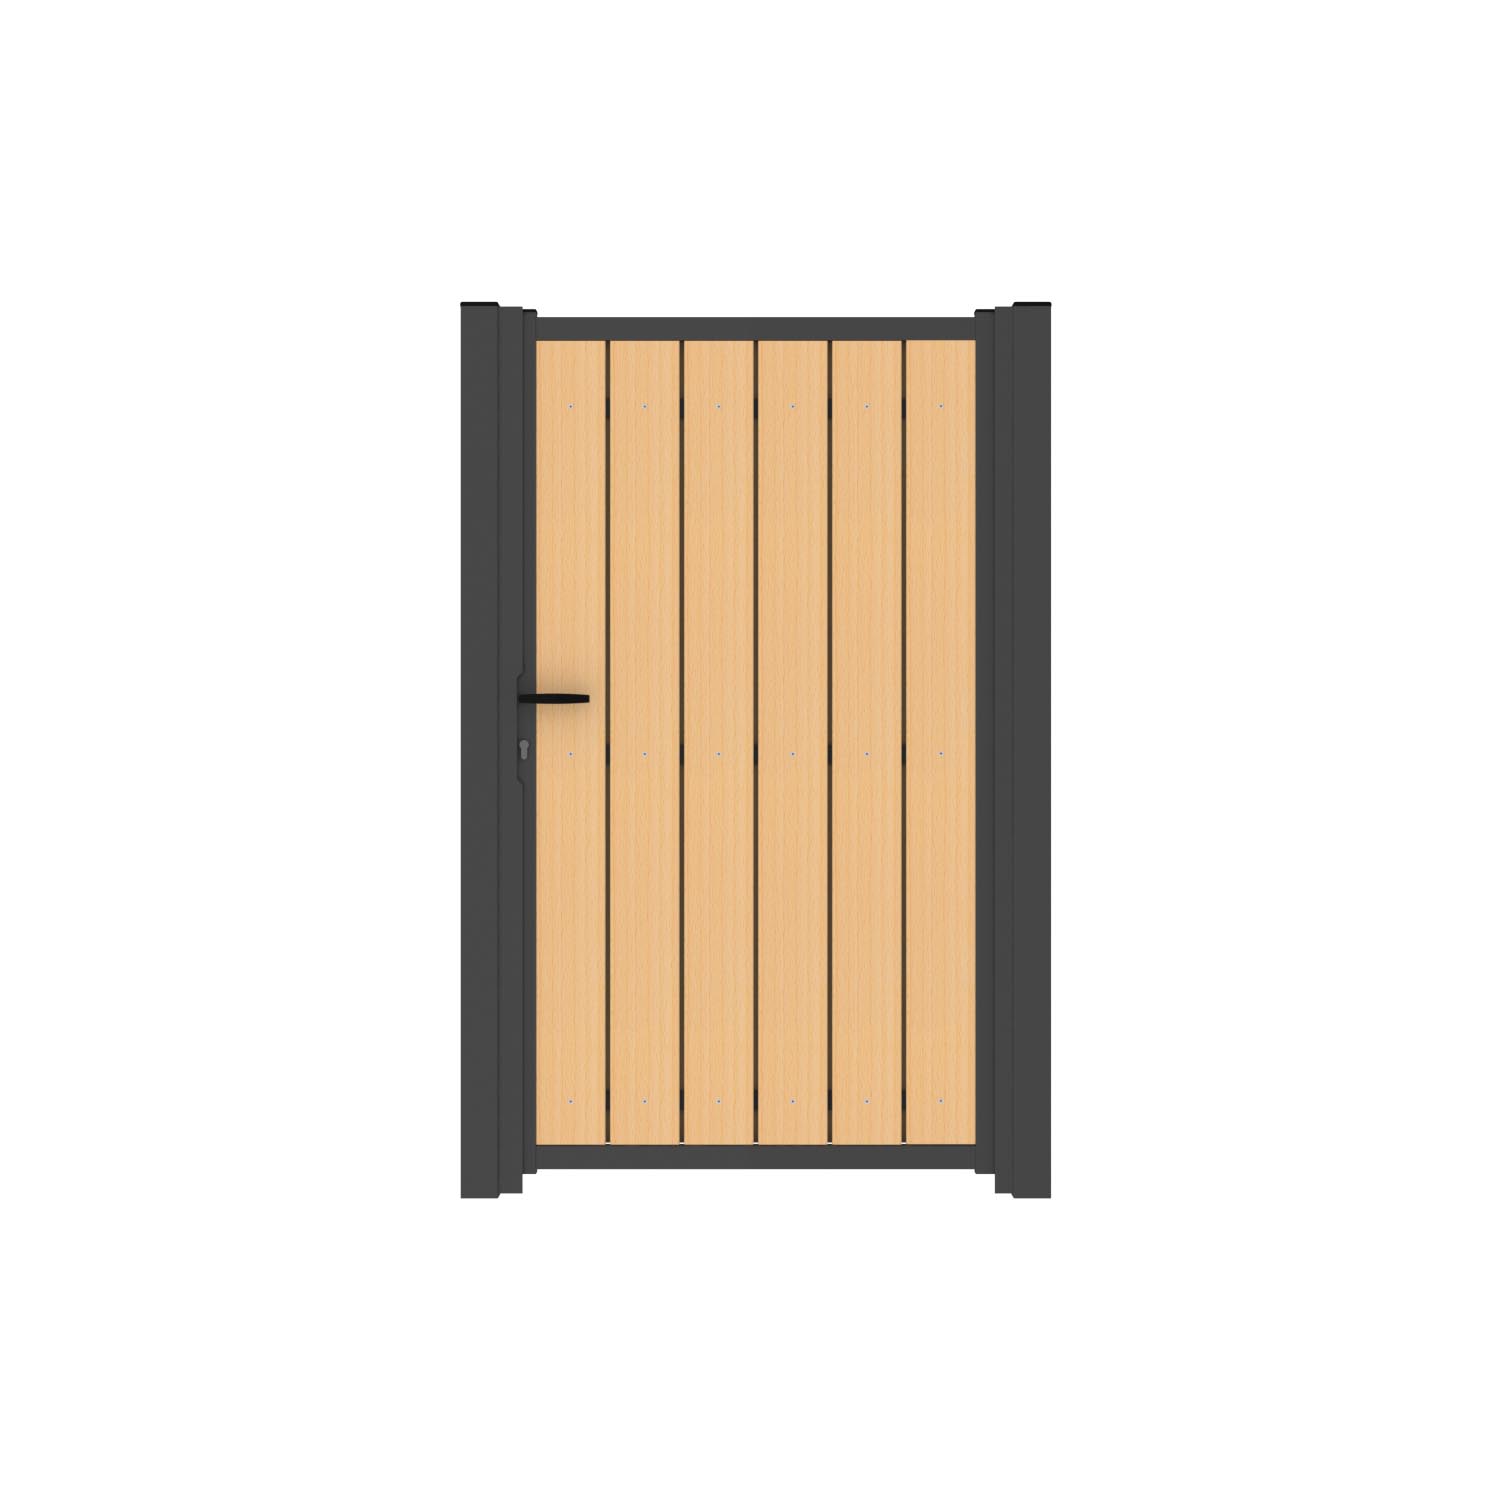 Geboorteplaats neem medicijnen toernooi Enkele rechte poort met verticale houten planken - Grootproducent van  hekken en poorten op maat